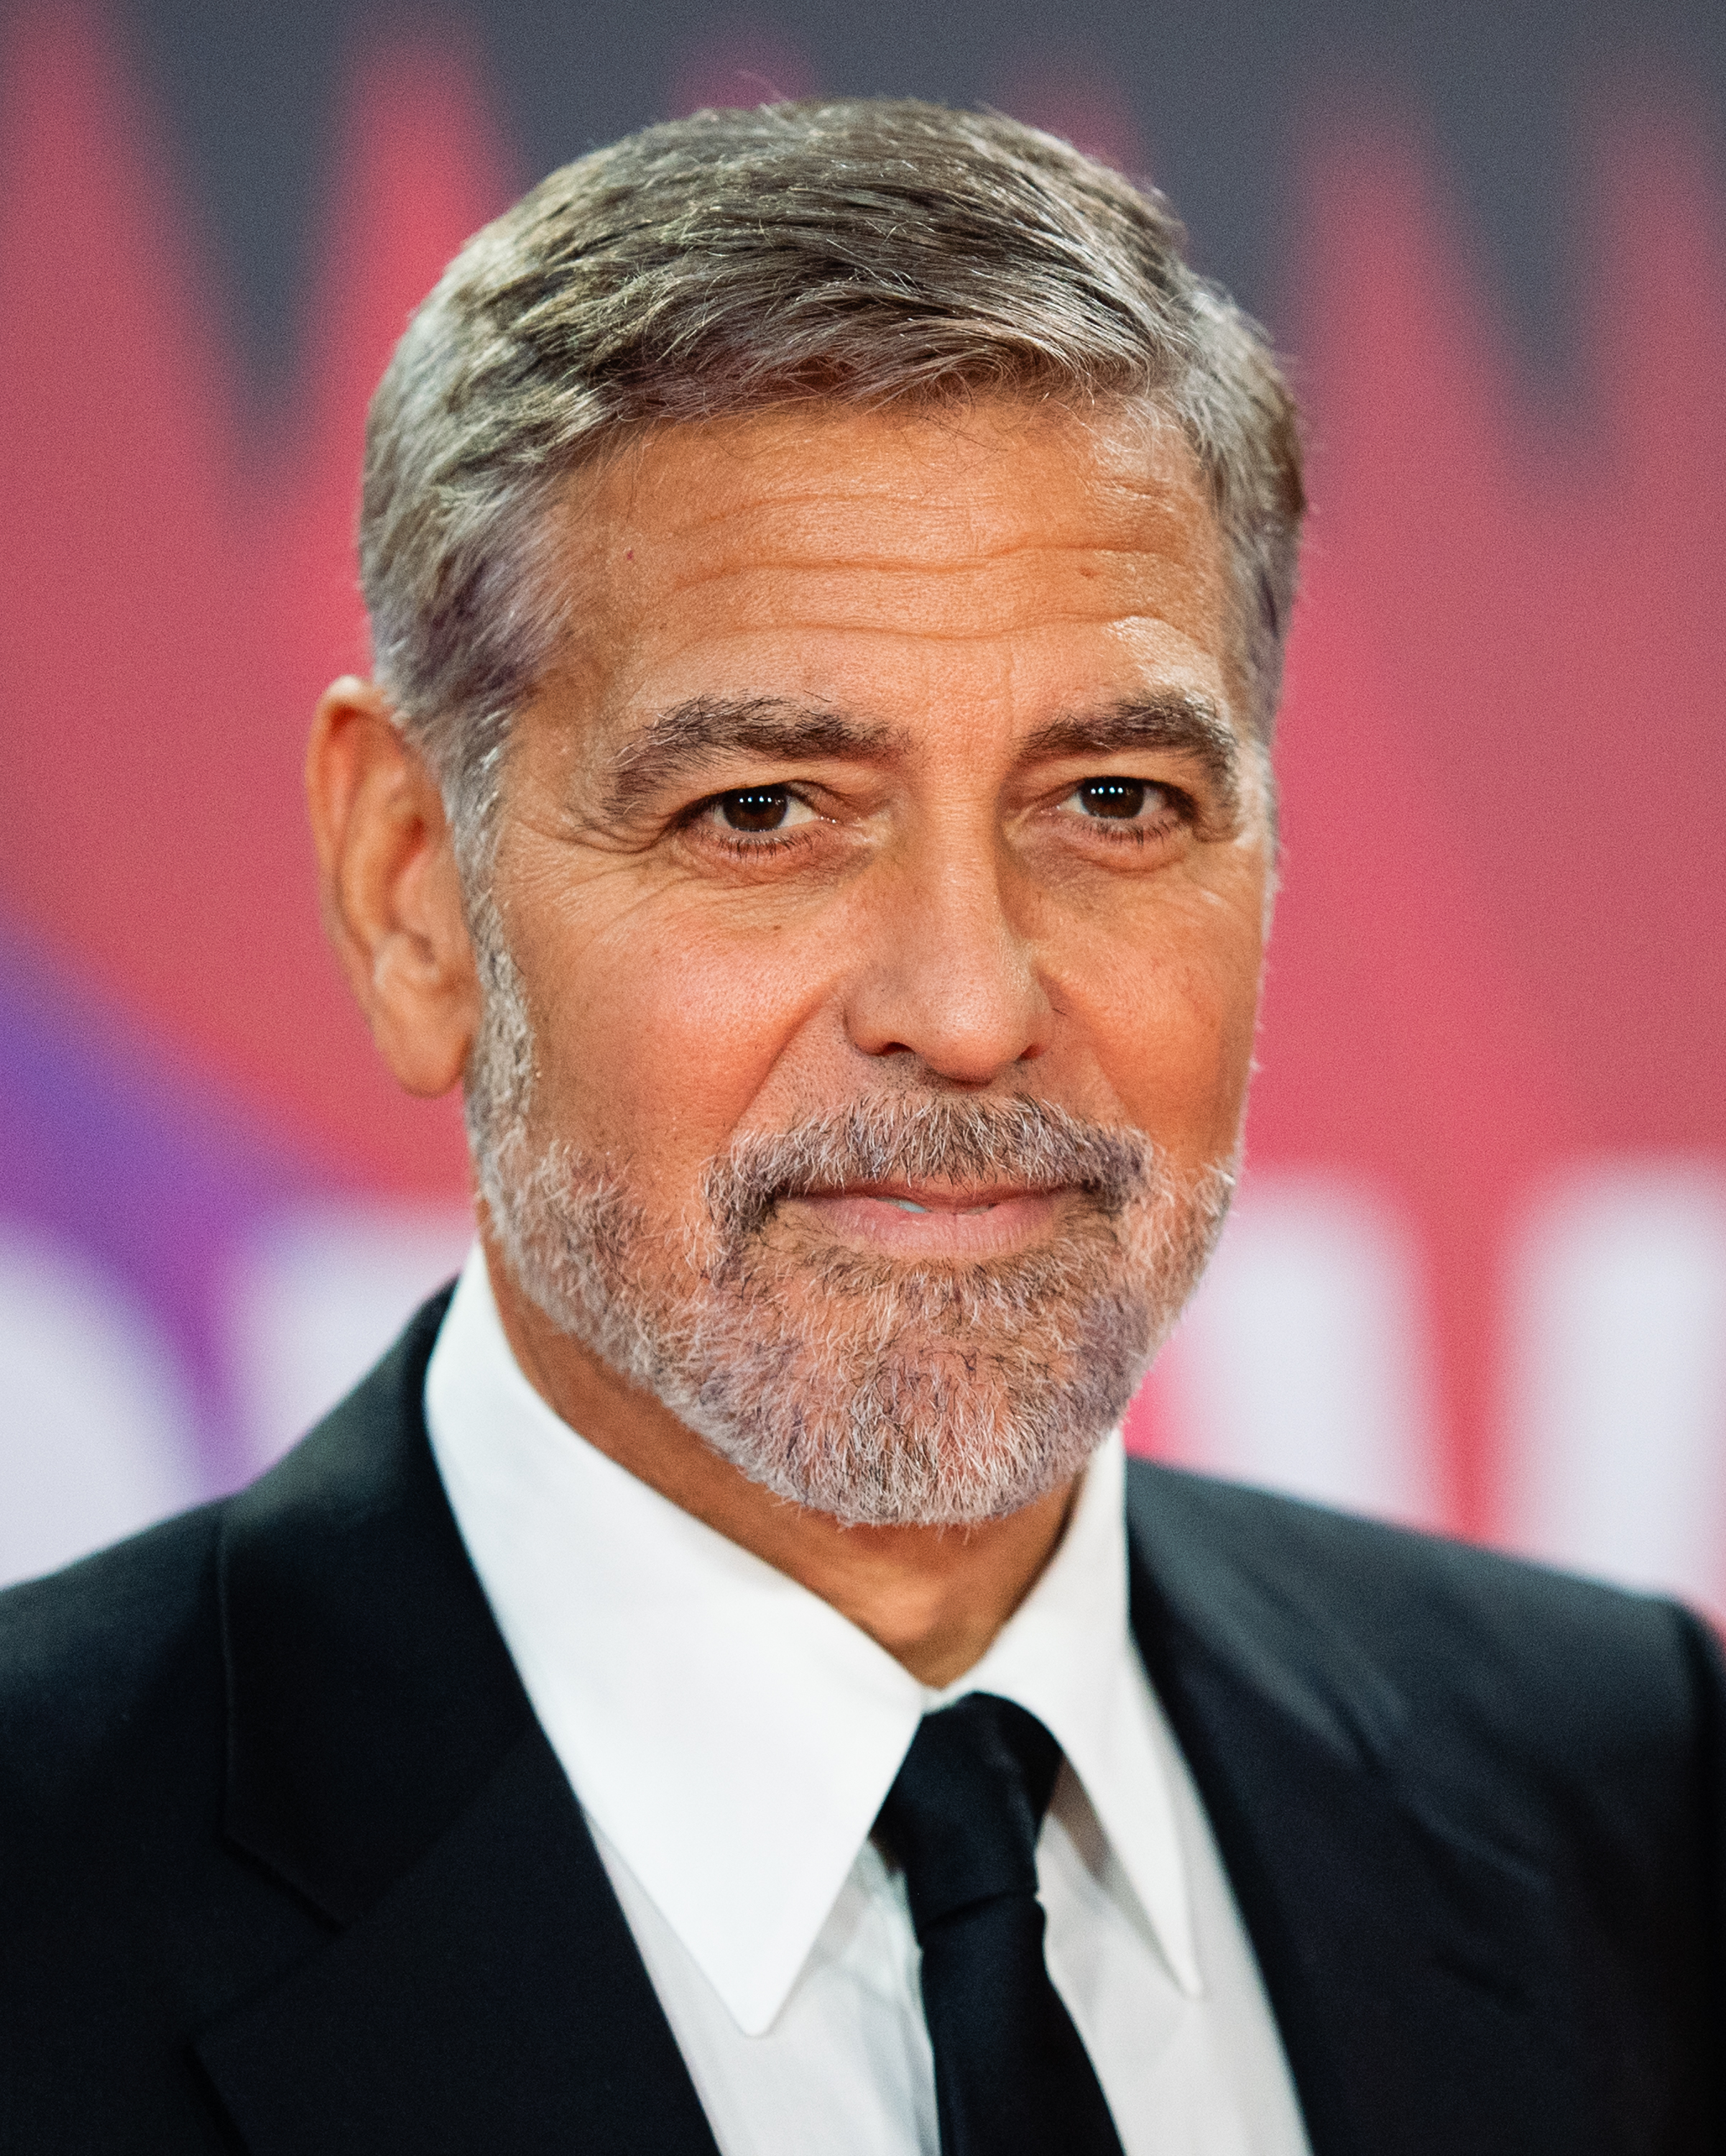 George Clooney en el estreno de "The Tender Bar" durante la 65ª edición del BFI London Film Festival en The Royal Festival Hall, el 10 de octubre de 2021, en Londres, Inglaterra. | Foto: Getty Images